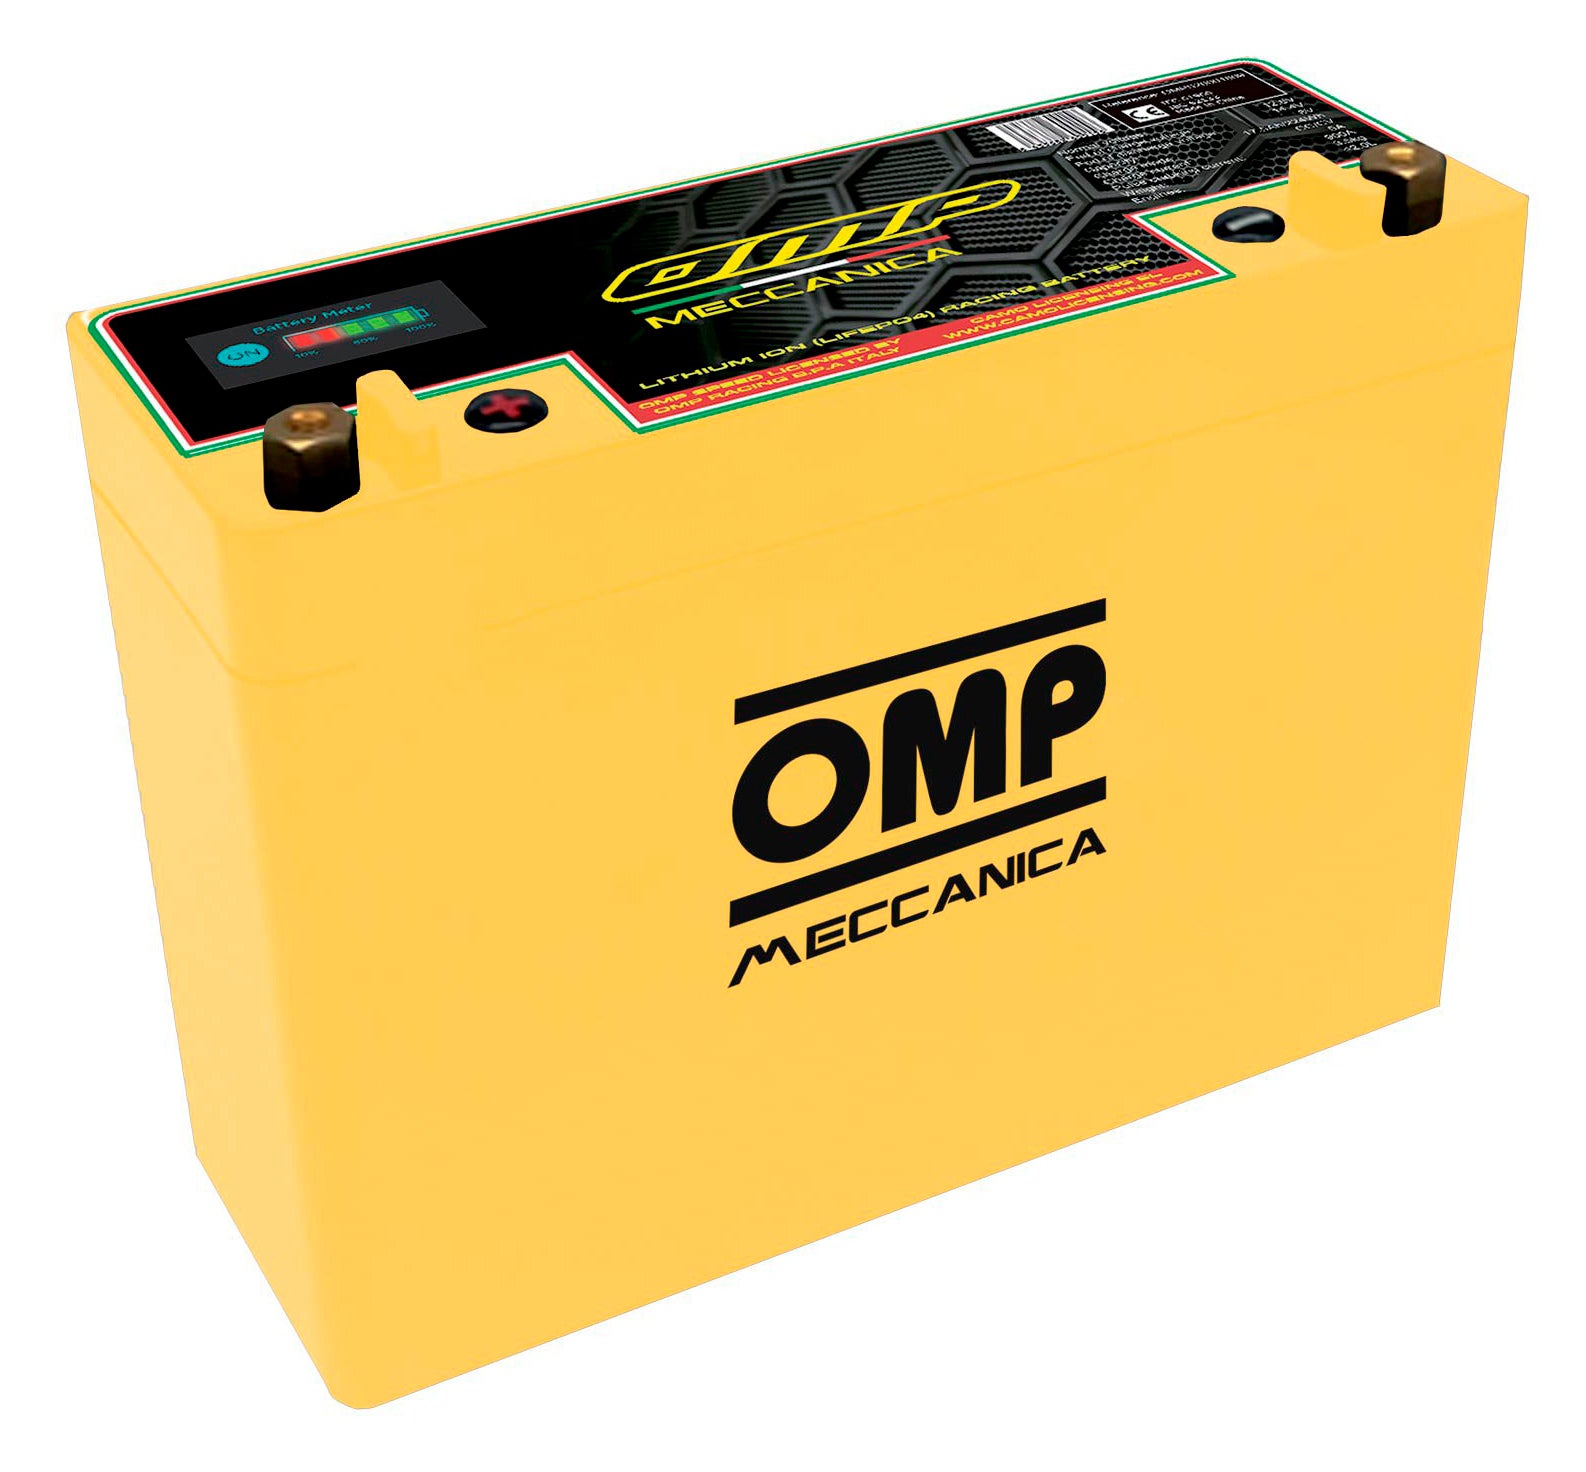 OMP OMPS20002009 літієвий акумулятор для машин з генератором, 20AH/256wh, PCC 1000A, 3.8 кг Photo-1 